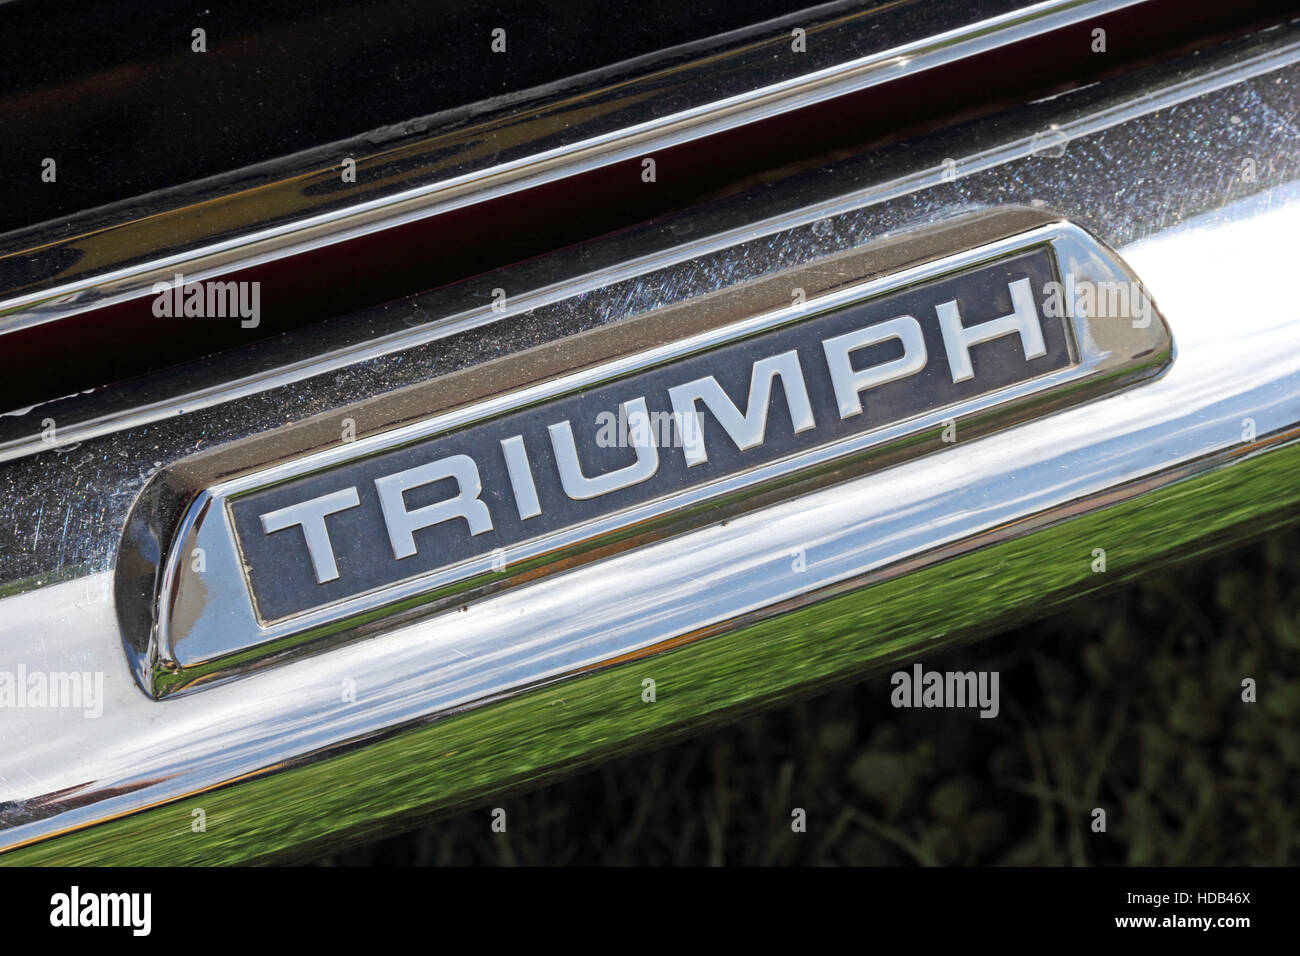 Triumph logo on rear bumper of Triumph Stag sports car Stock Photo